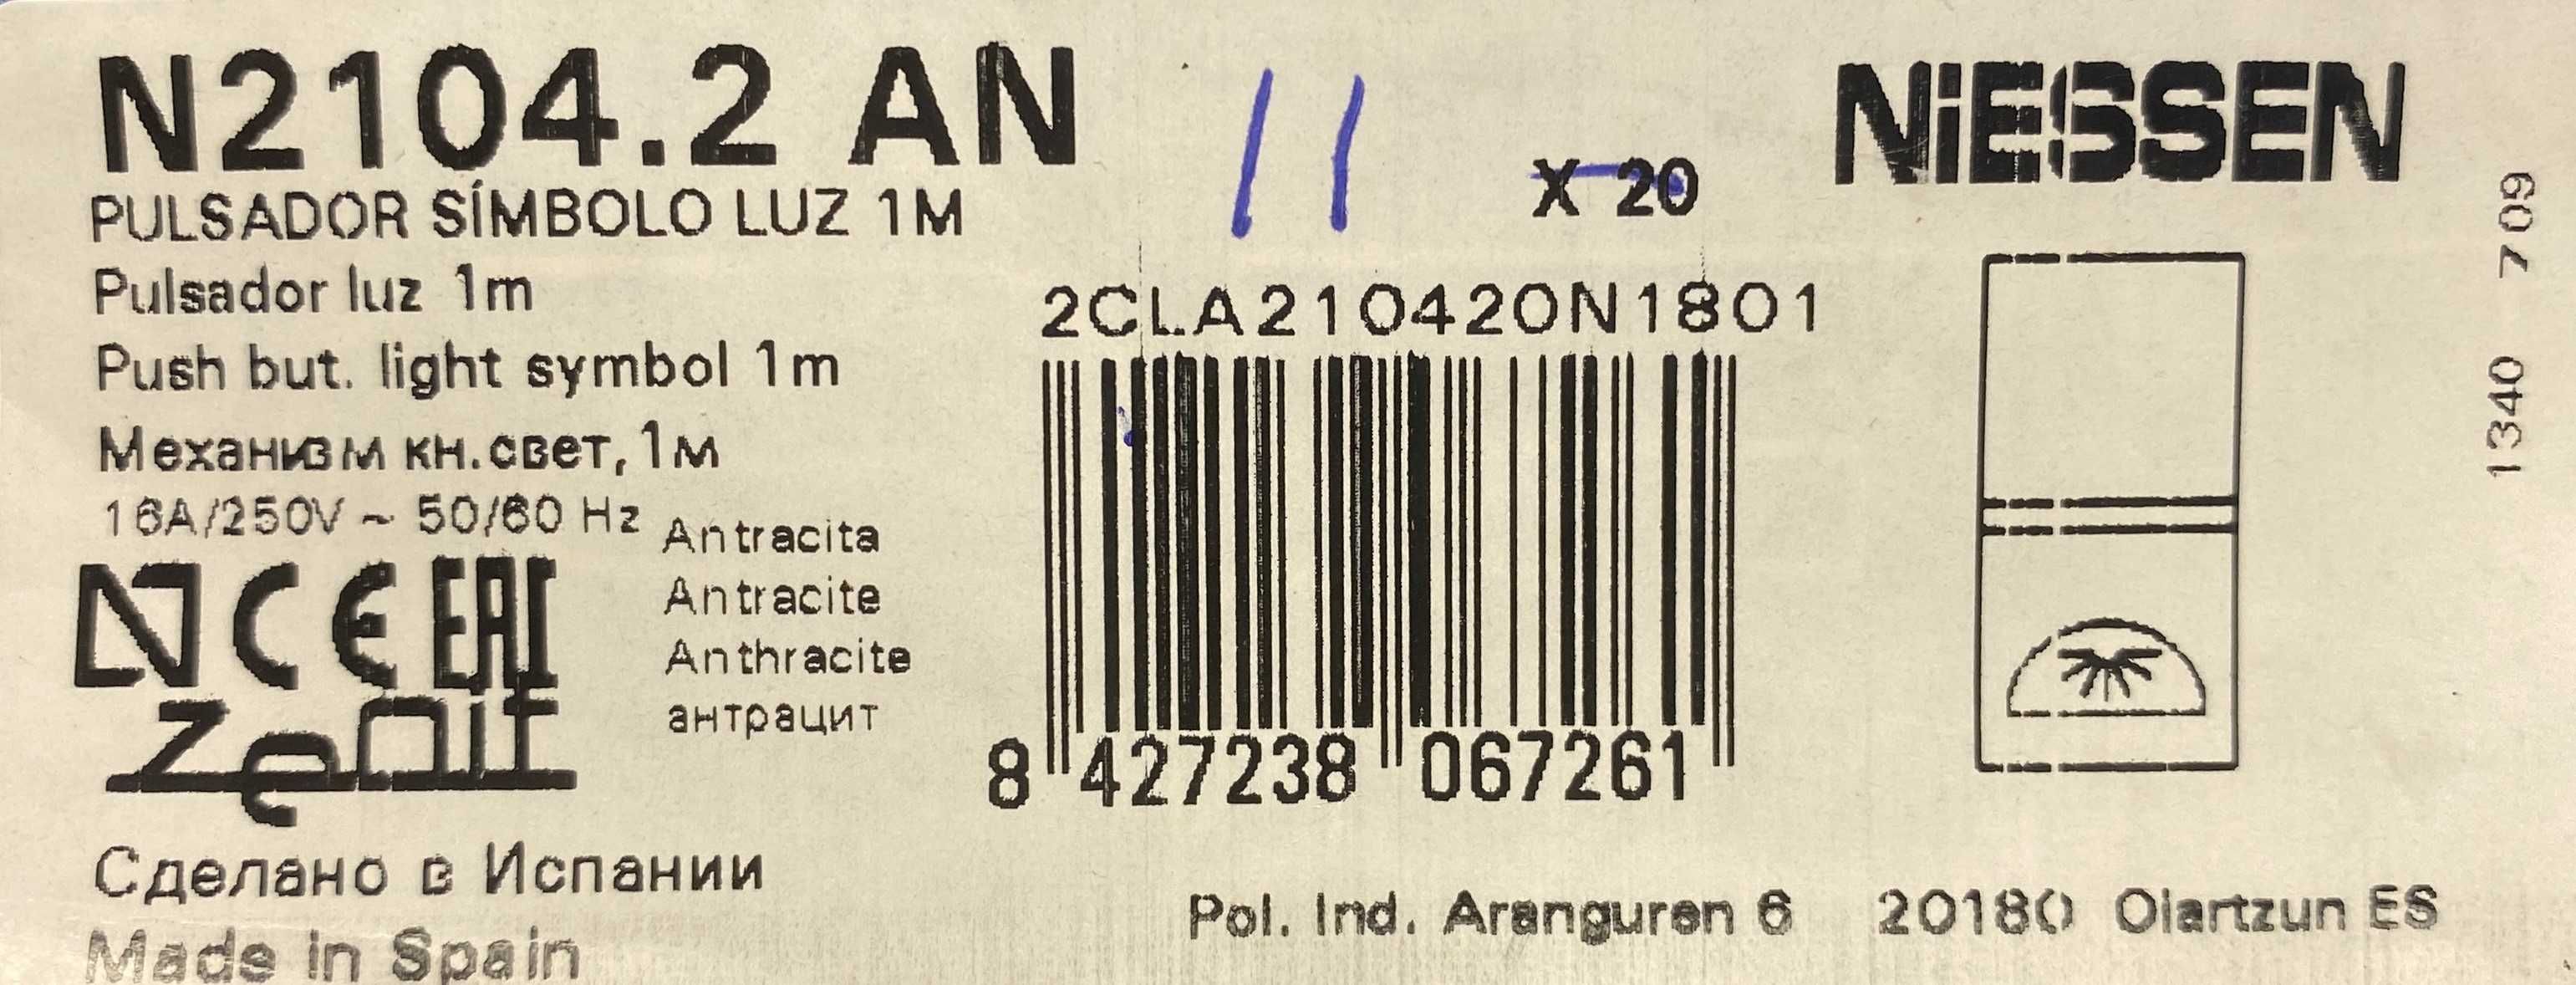 Botão estreito com símbolo luminoso Zenit NIESSEN N2104.2 AN